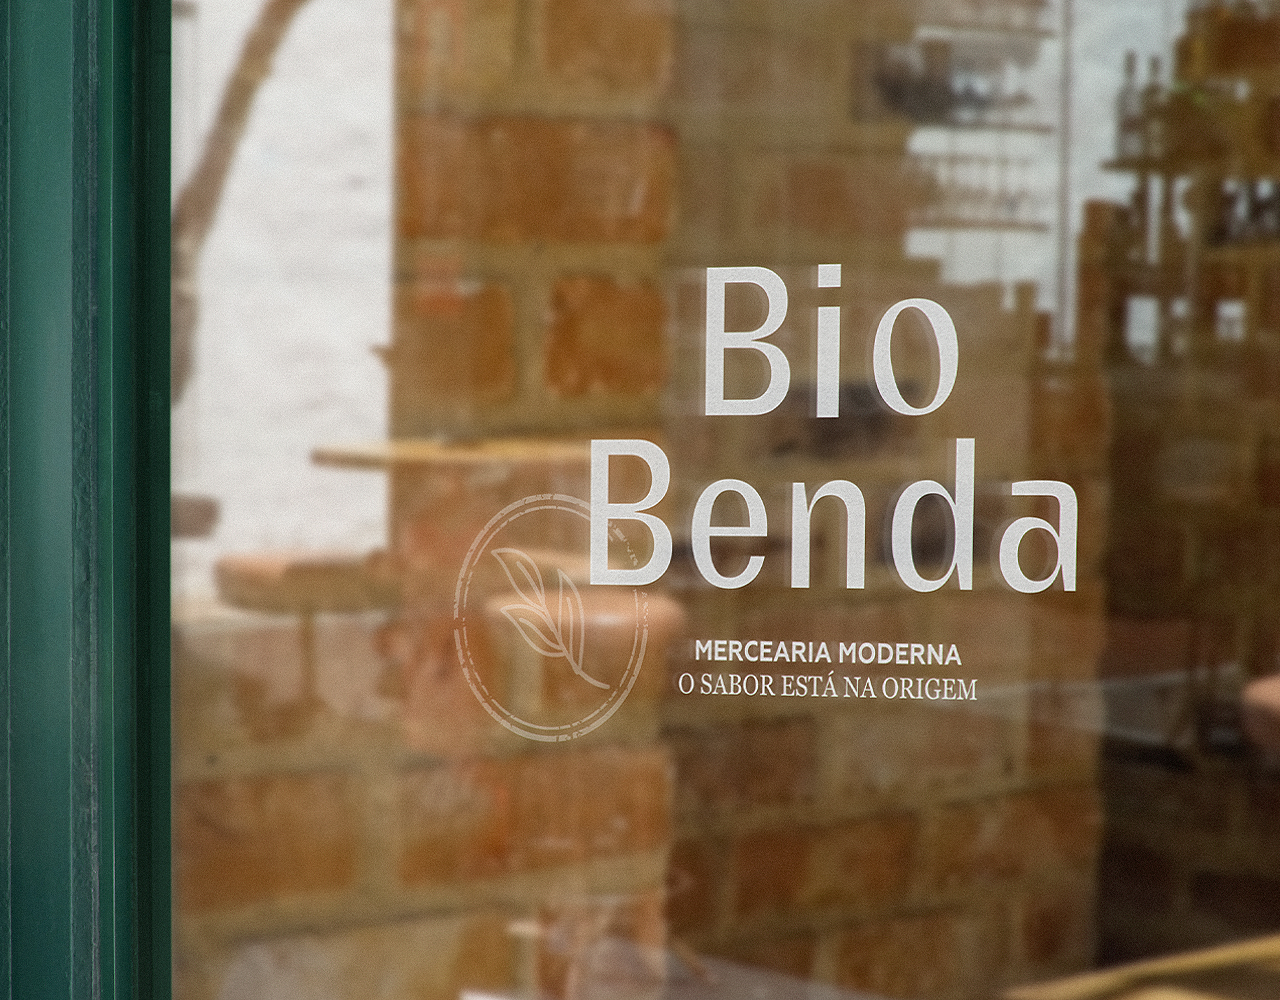 Work view – BioBenda 5